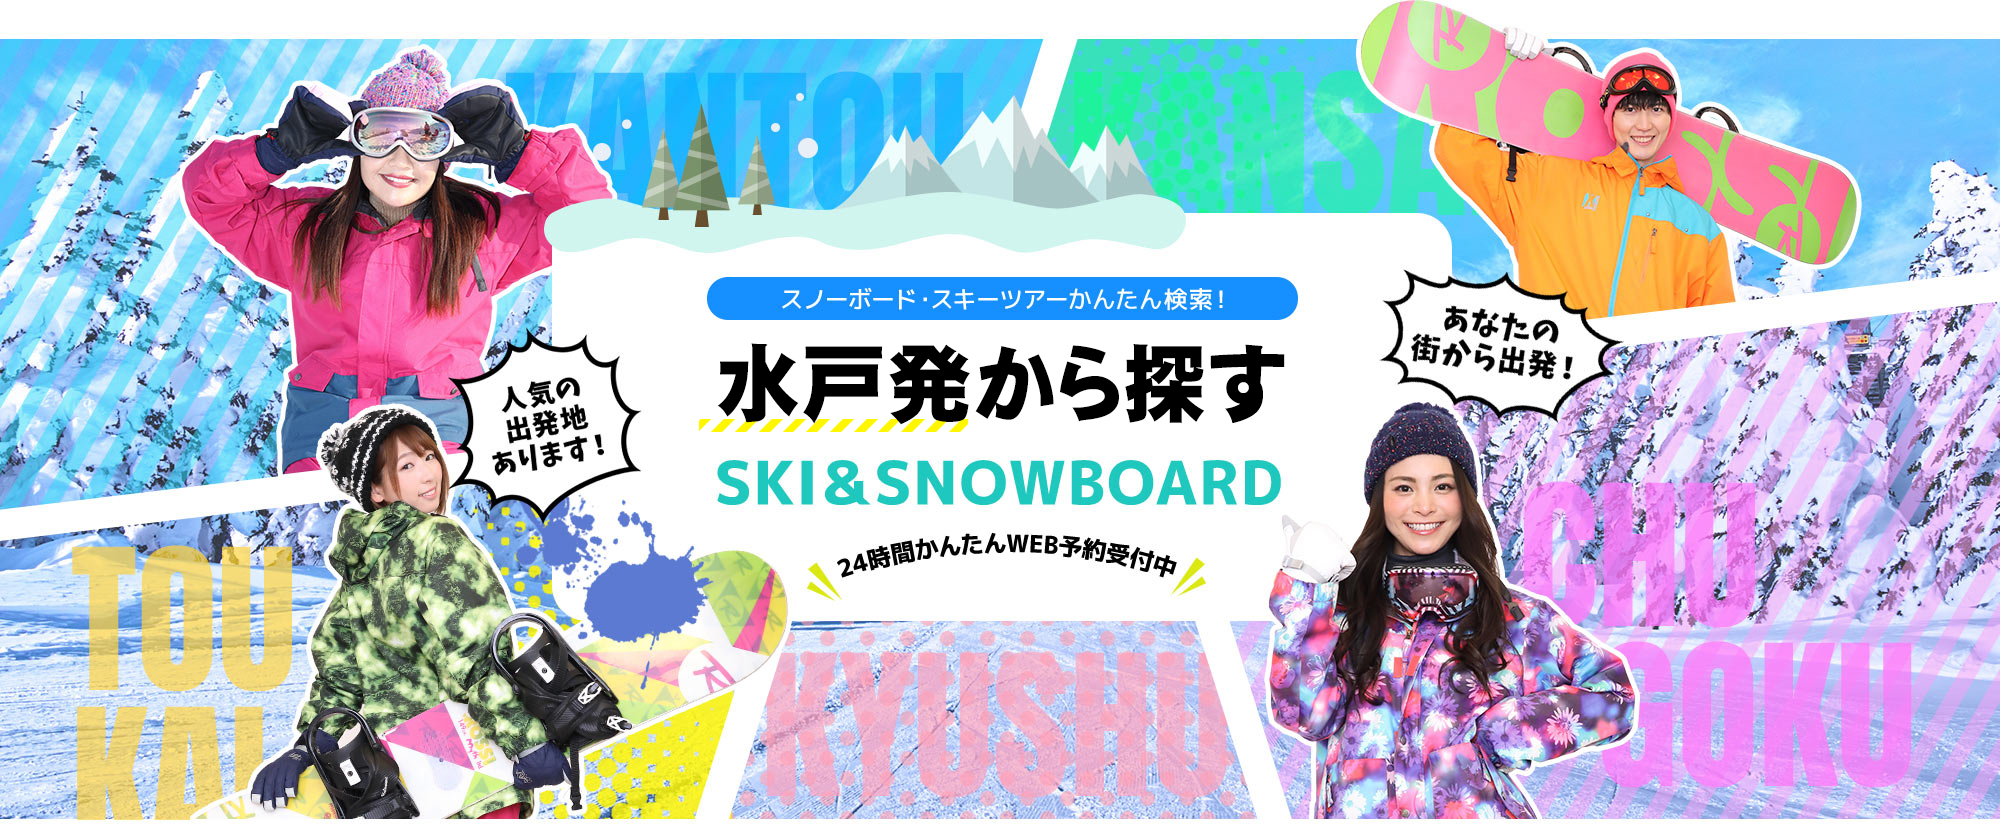 スノーボード・スキーツアーかんたん検索！ 水戸発から探す SKI&SNOWBOARD